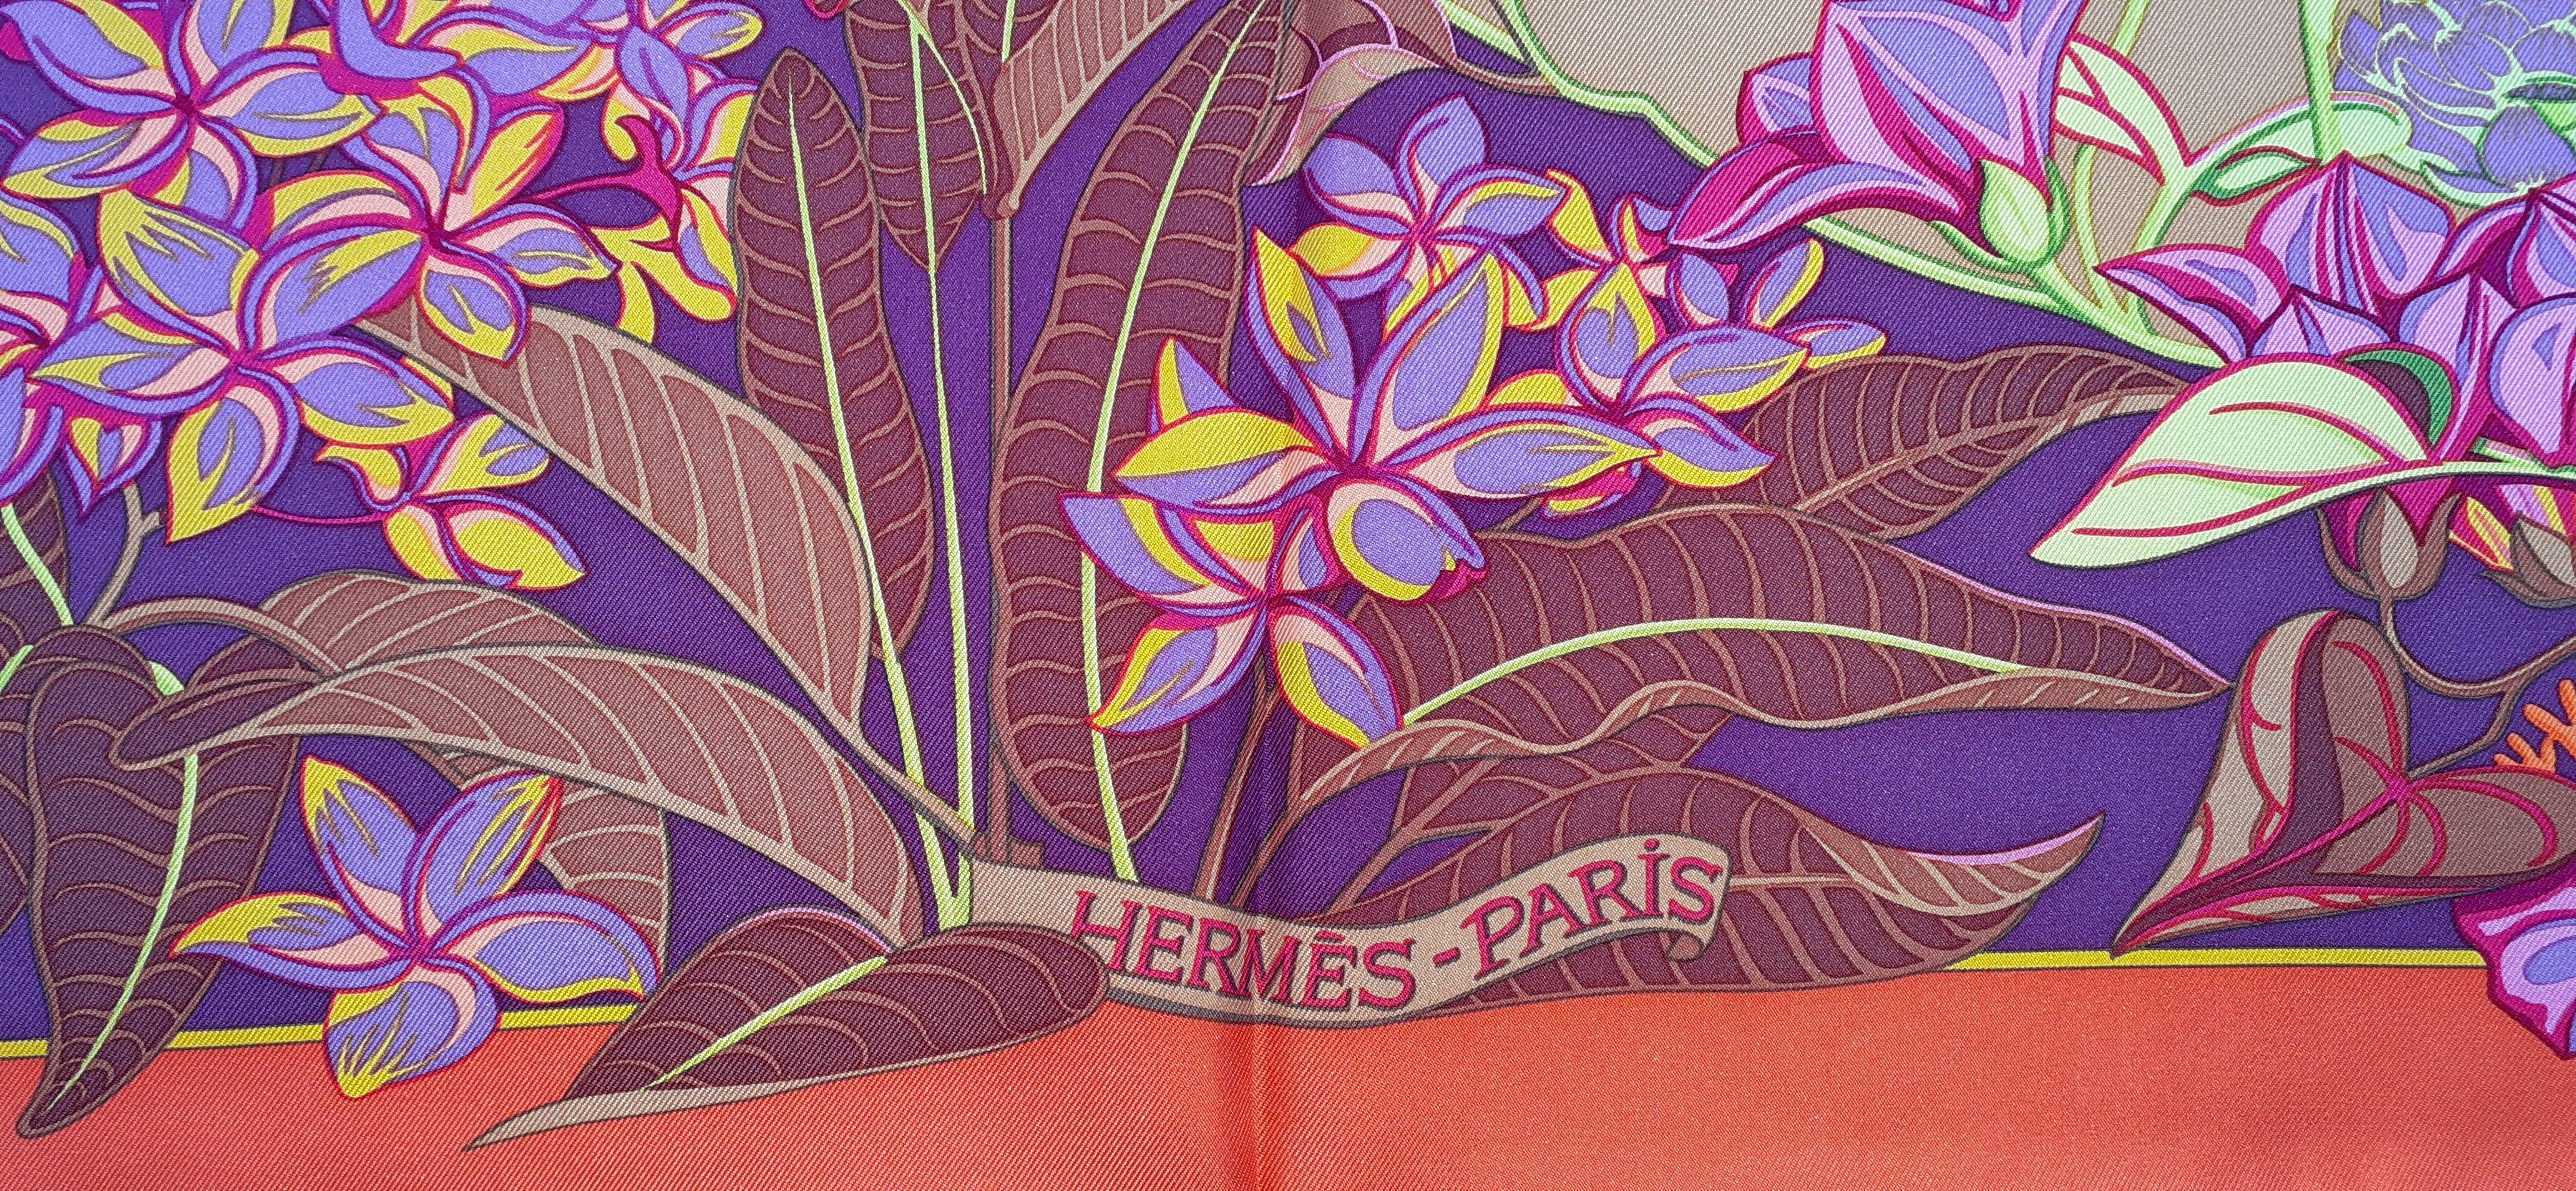 Hermès Silk Scarf Flamingo Party Bourthoumieux 90 cm For Sale 4